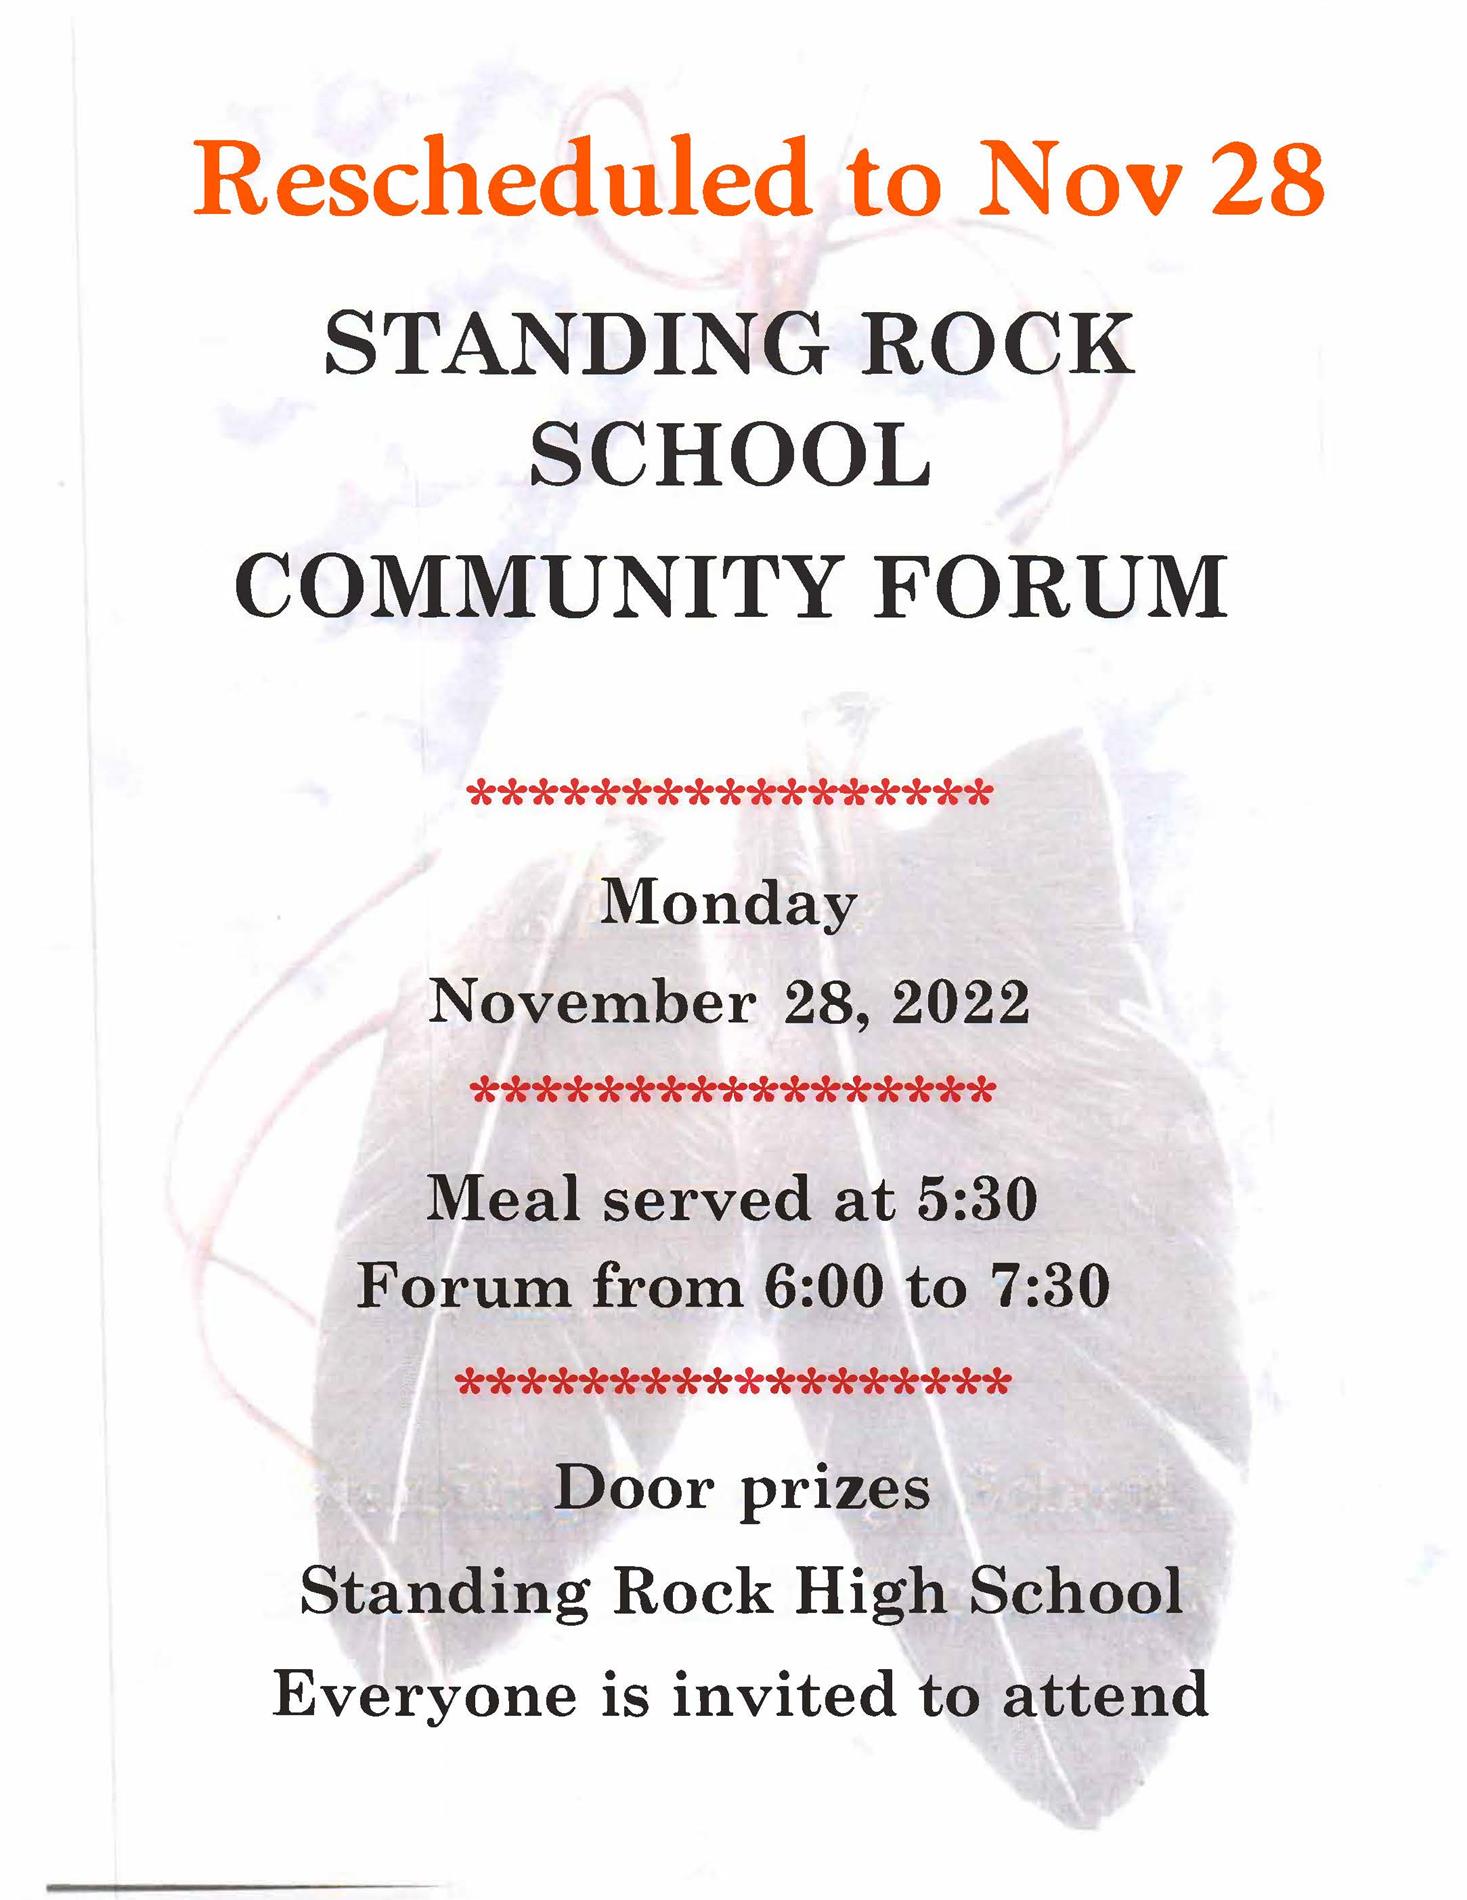 Standing Rock School Community Forum flyer